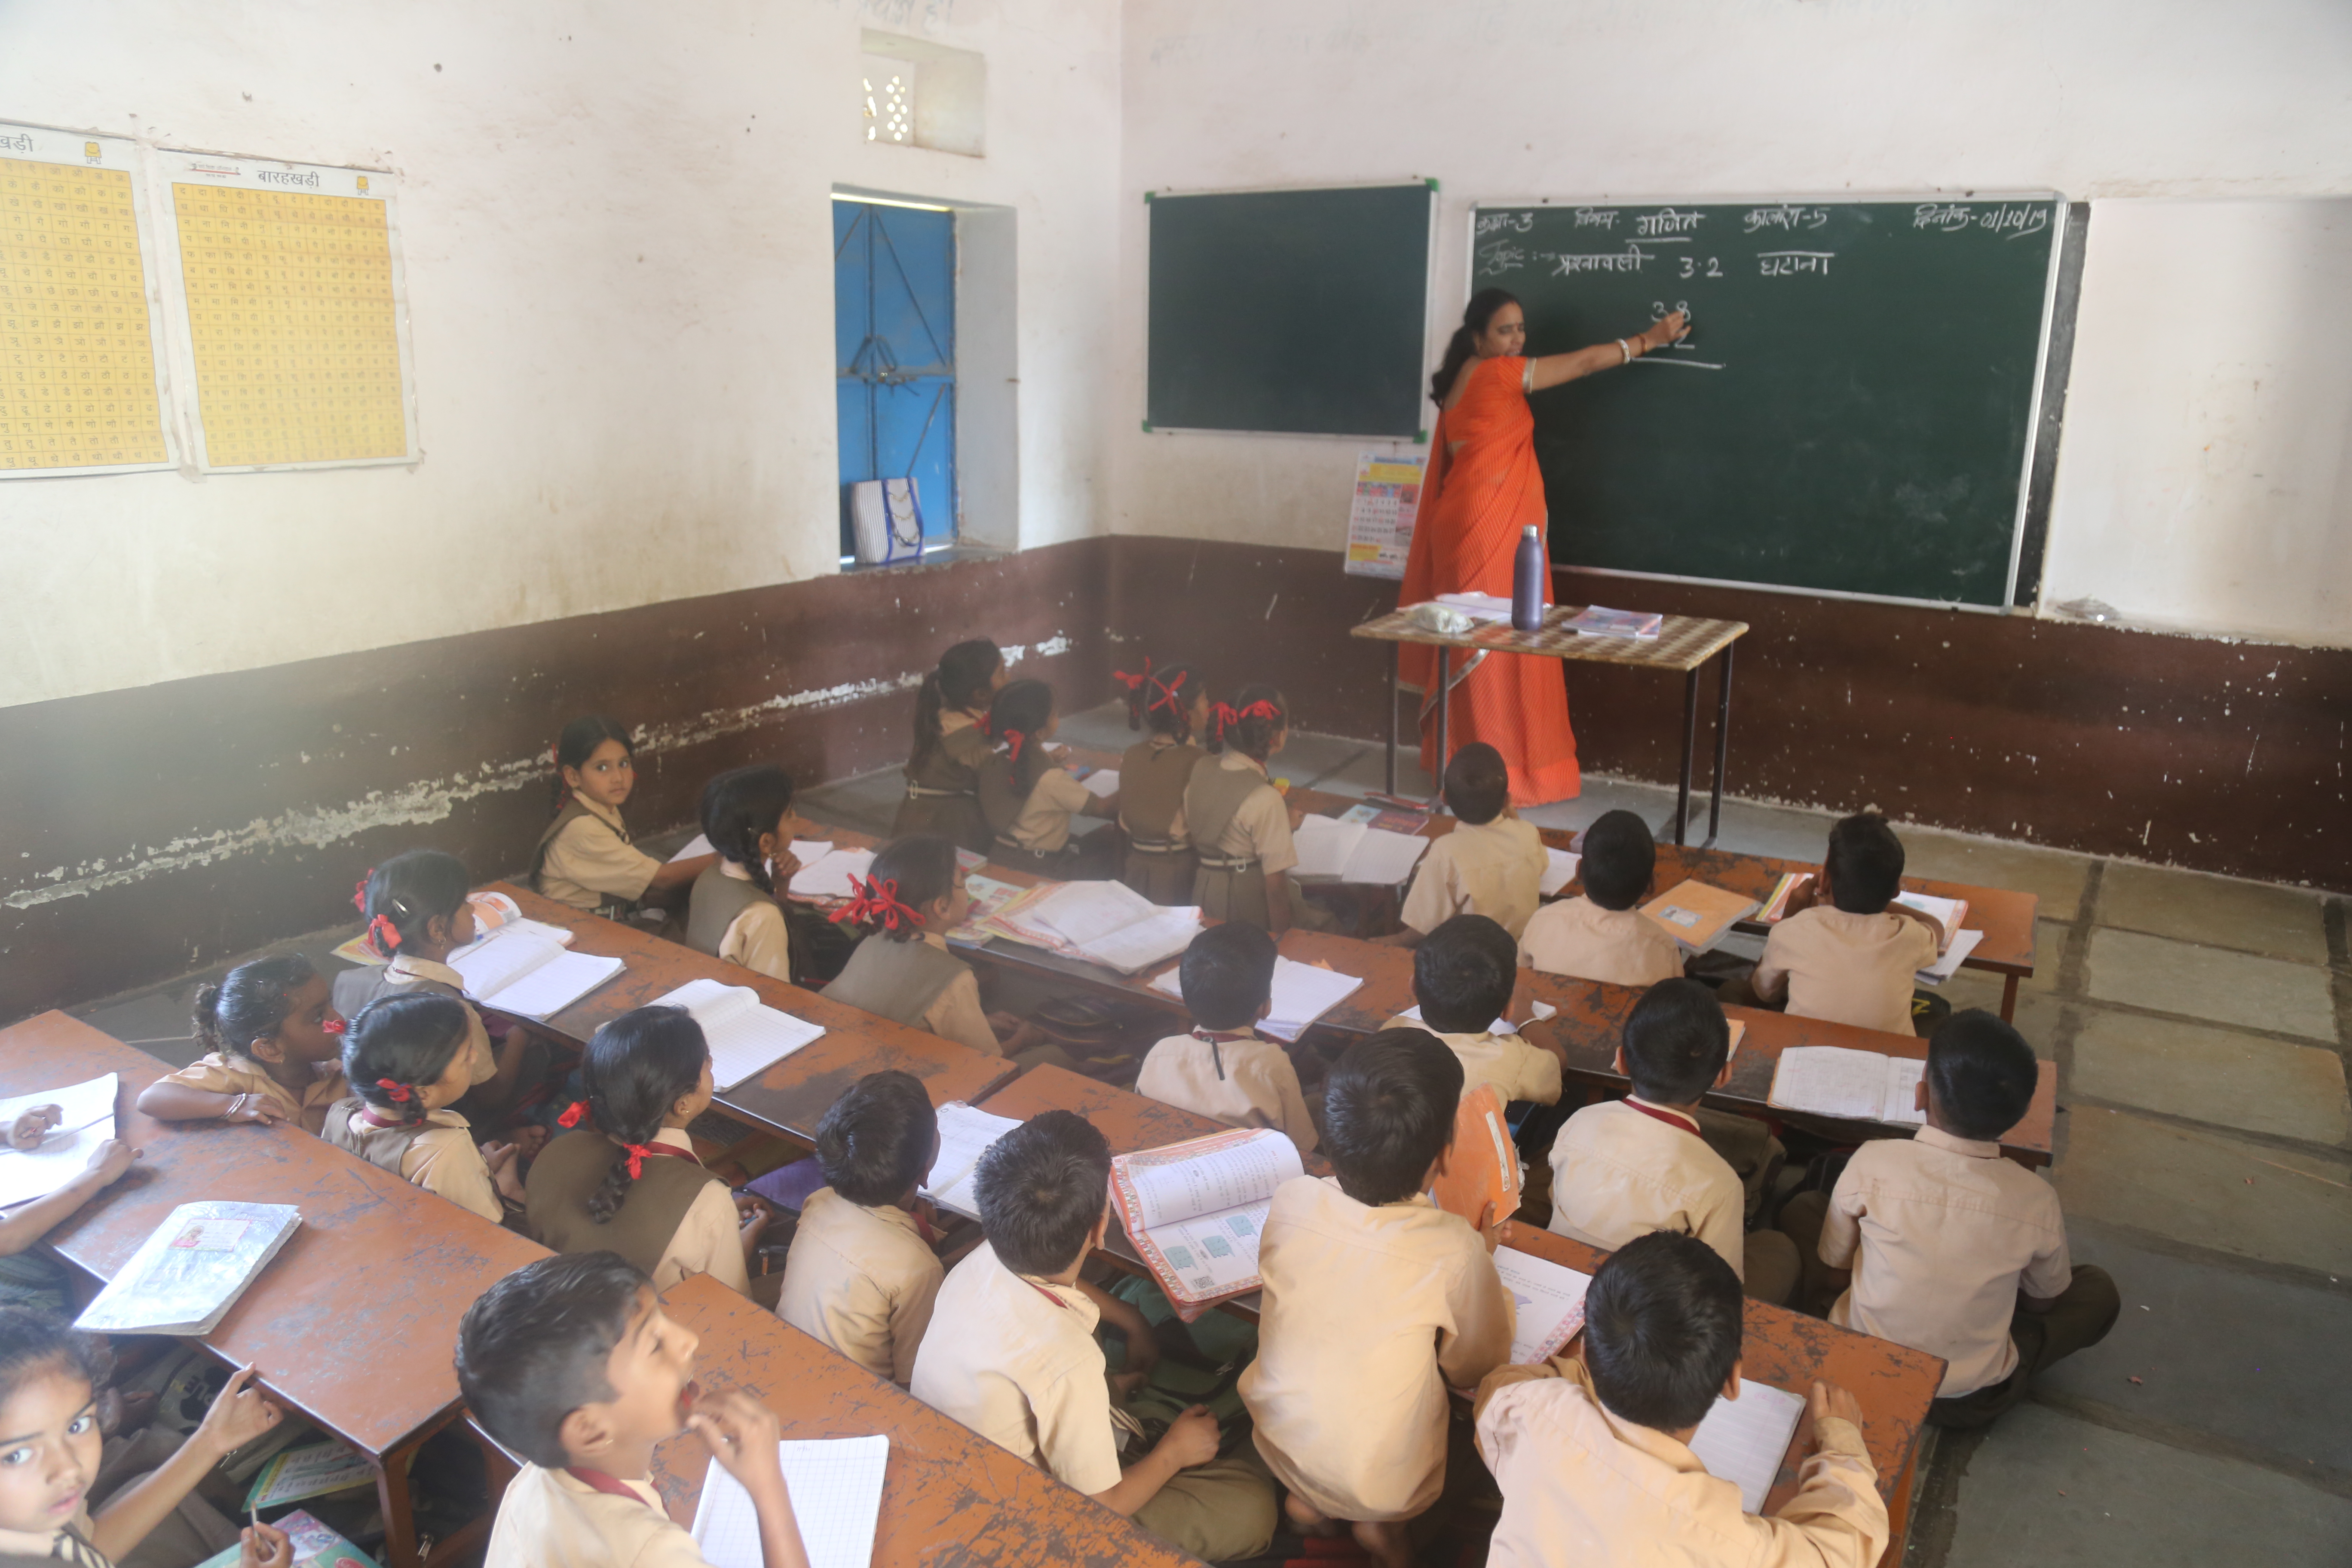 शिक्षकों ने बदल दी इस सरकारी स्कूल की सूरत, बच्चे चुटकियों में रच देते हैं
कहानी-कविताएं